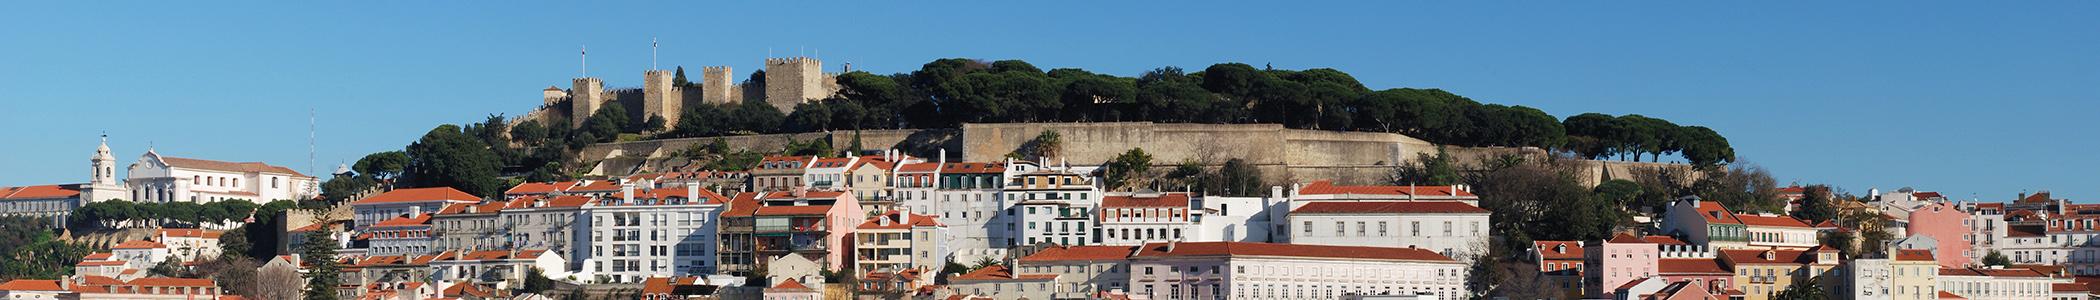 Banner image for Lisbon on GigsGuide